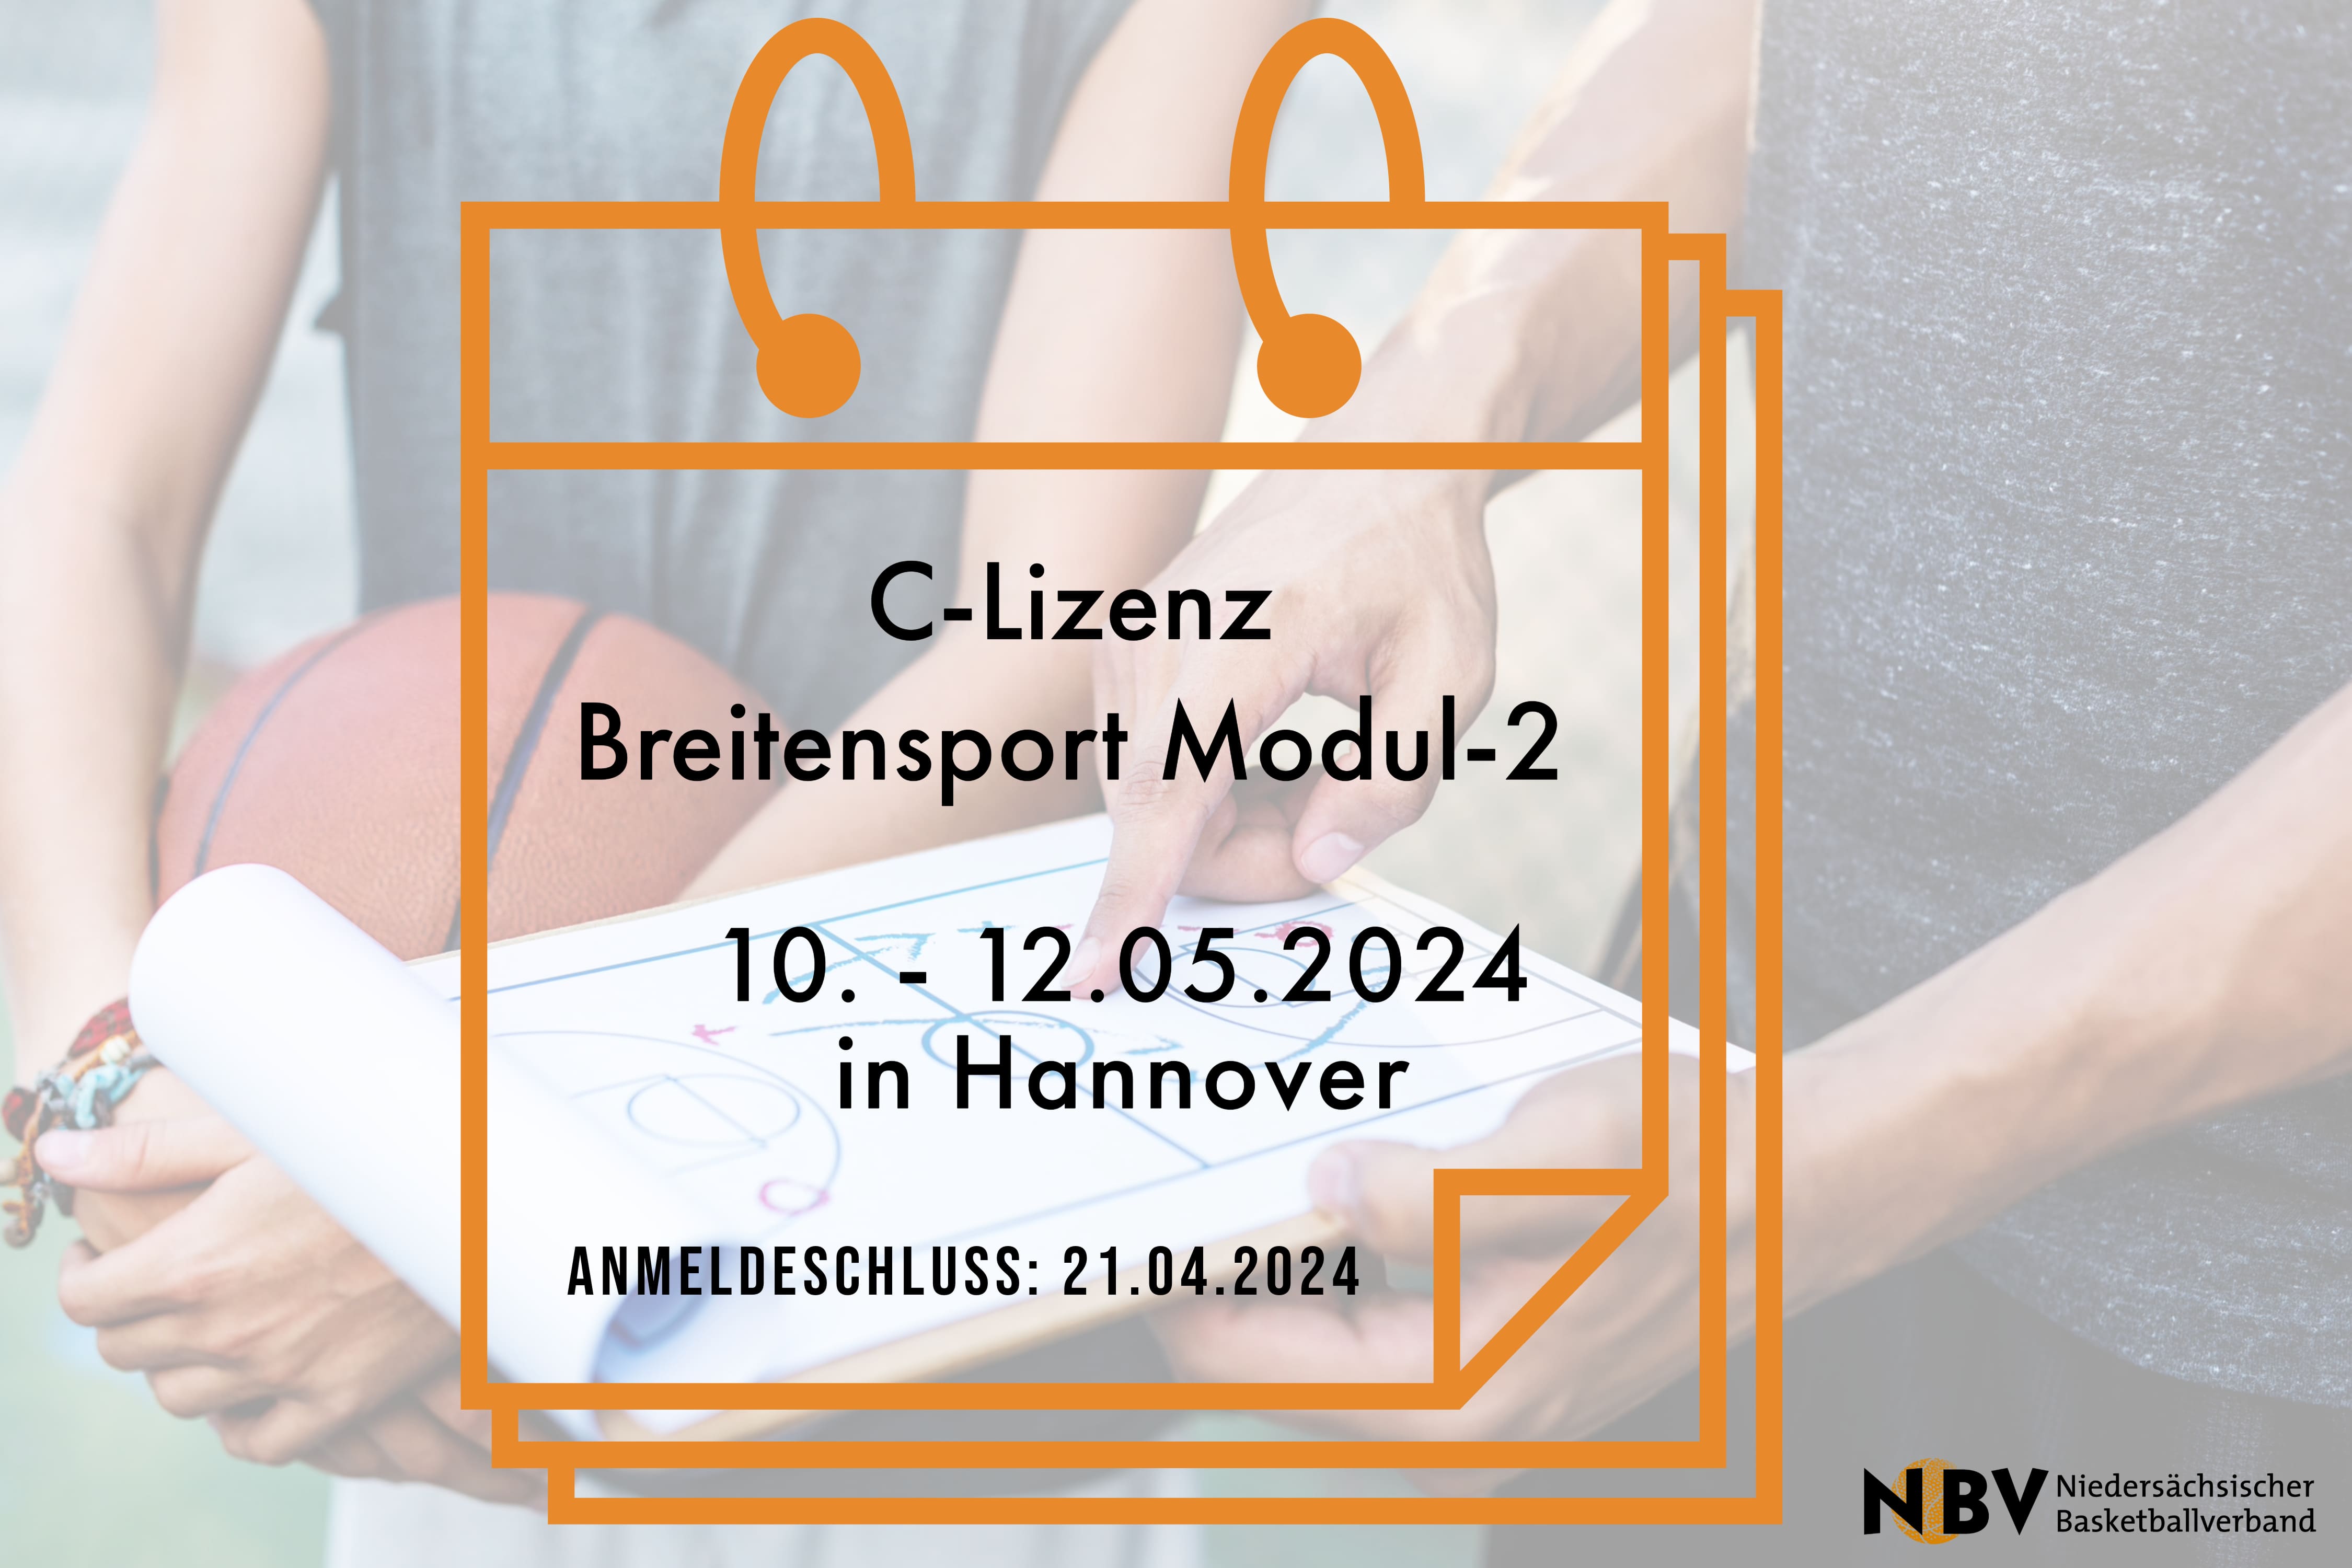 C-Lizenz Breitensport Modul-2 (Hannover)